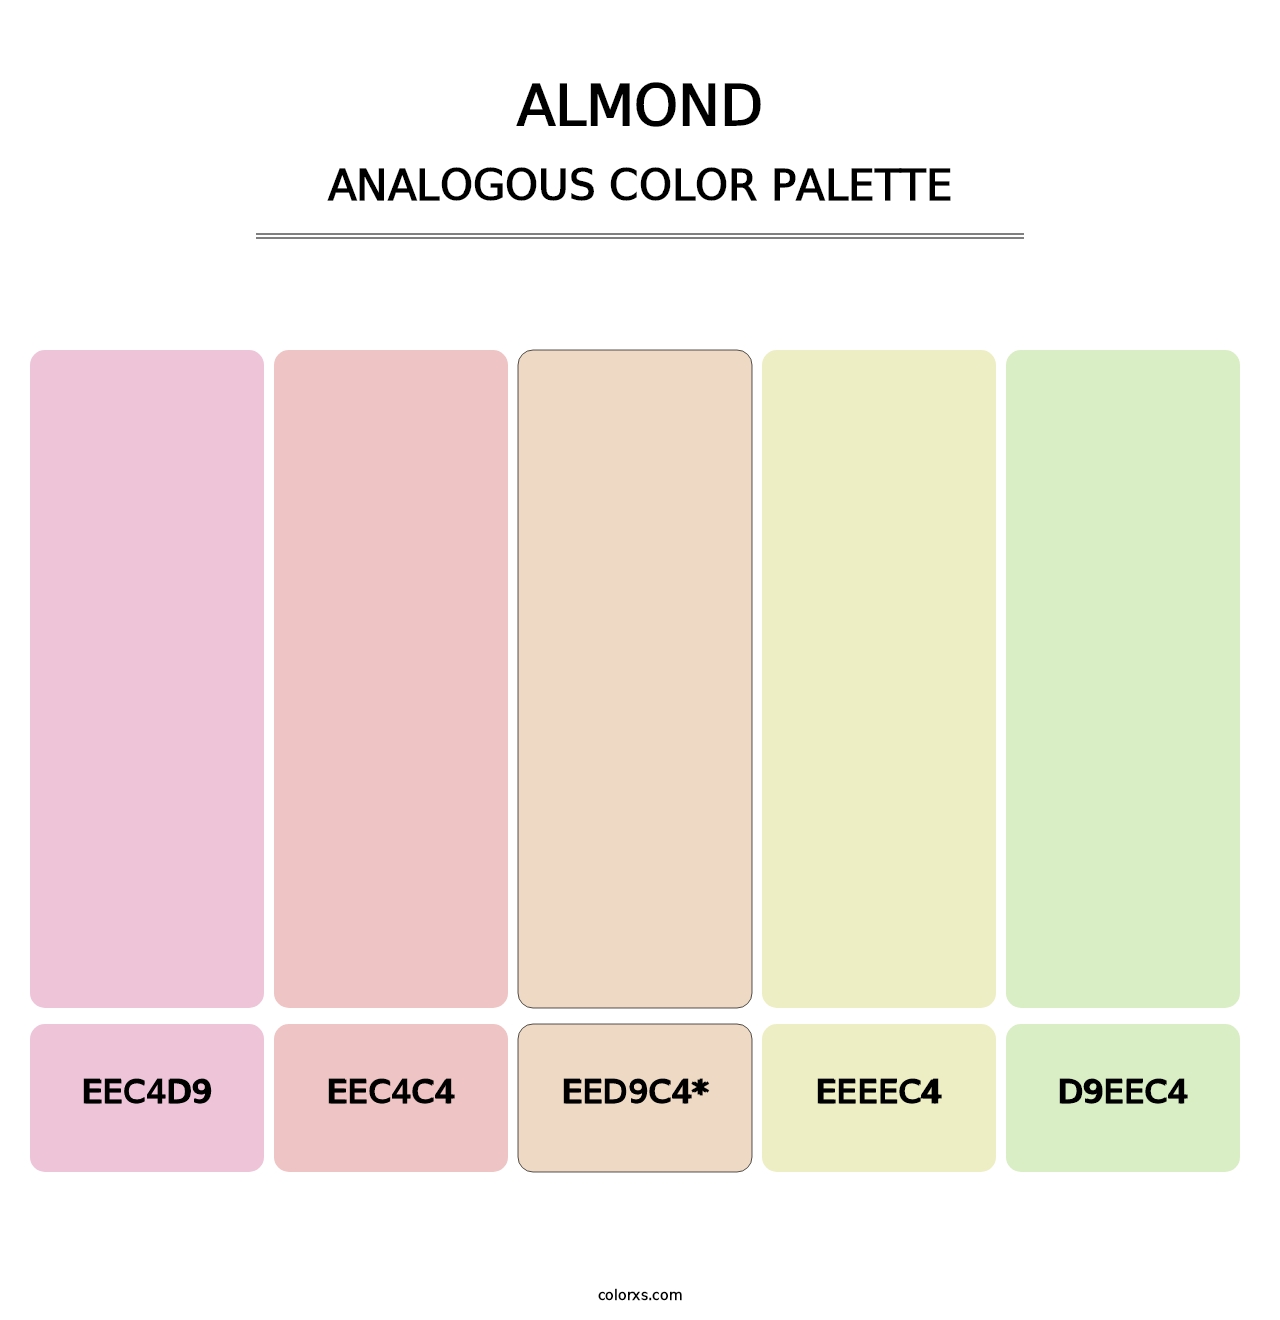 Almond - Analogous Color Palette